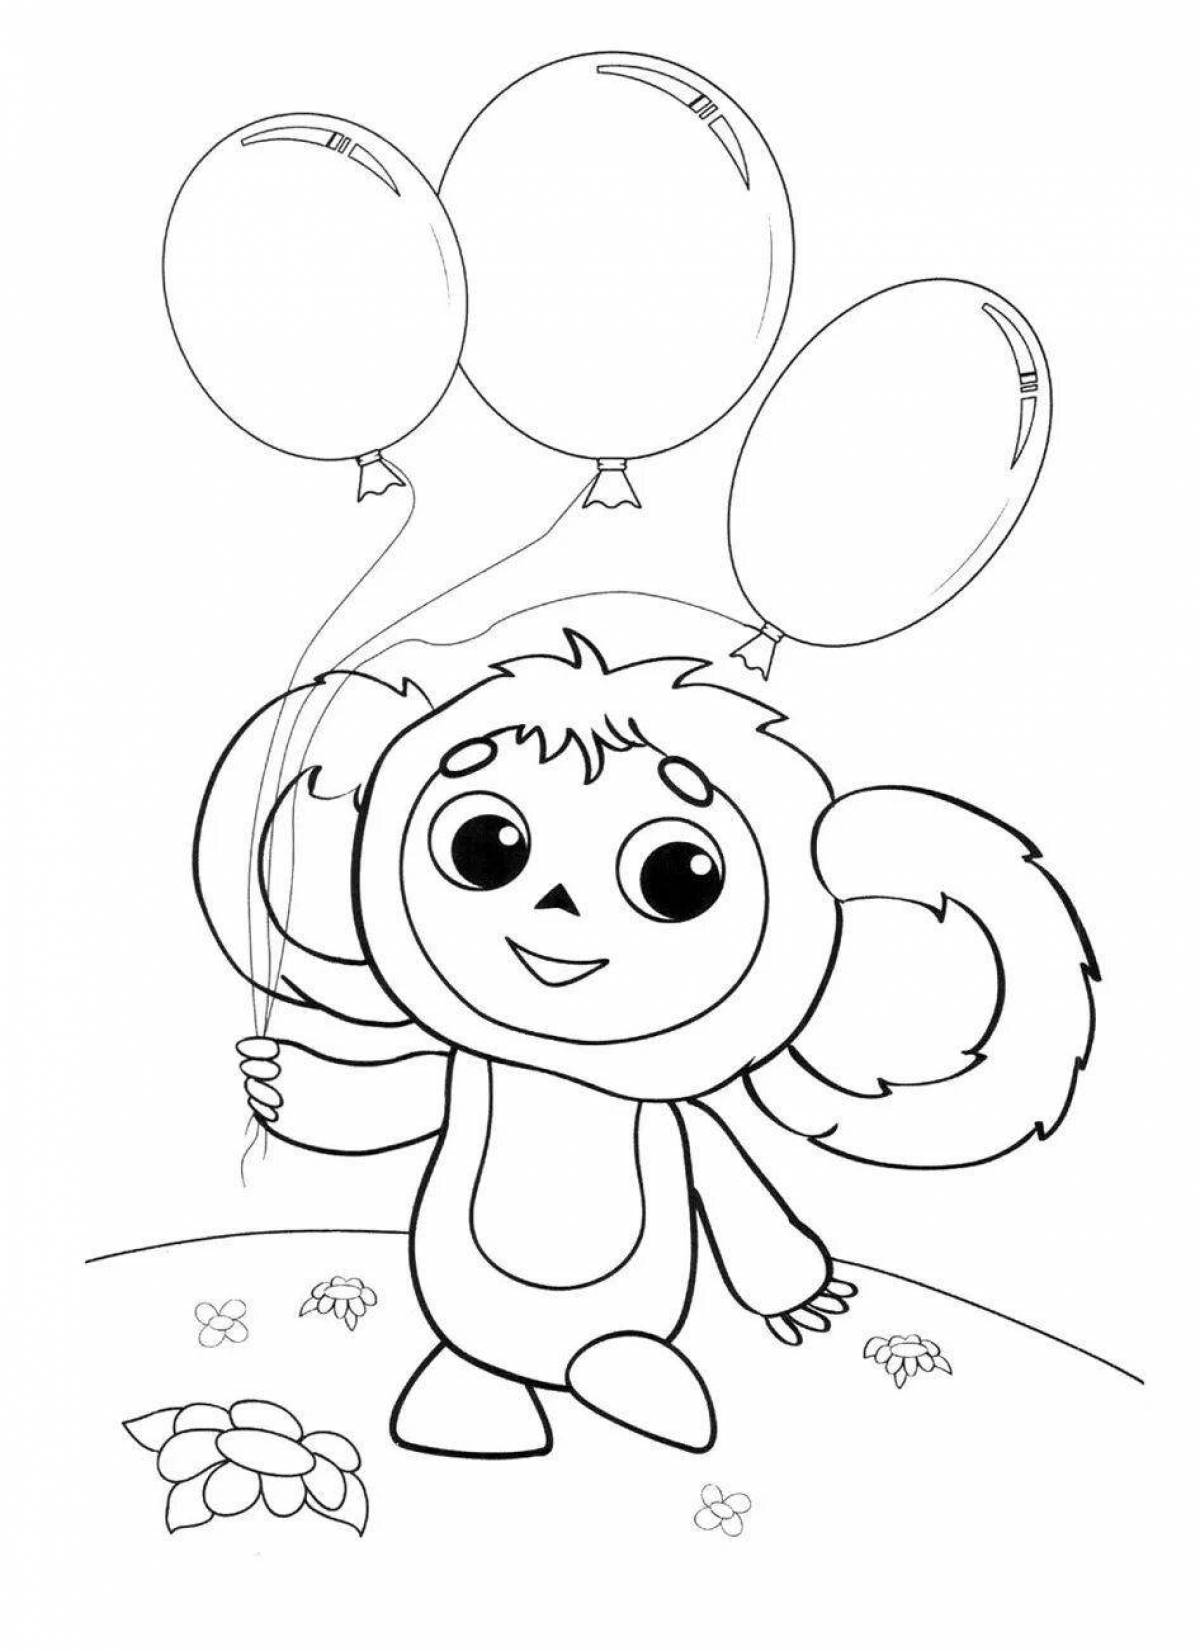 Attractive Cheburashka coloring book for kids